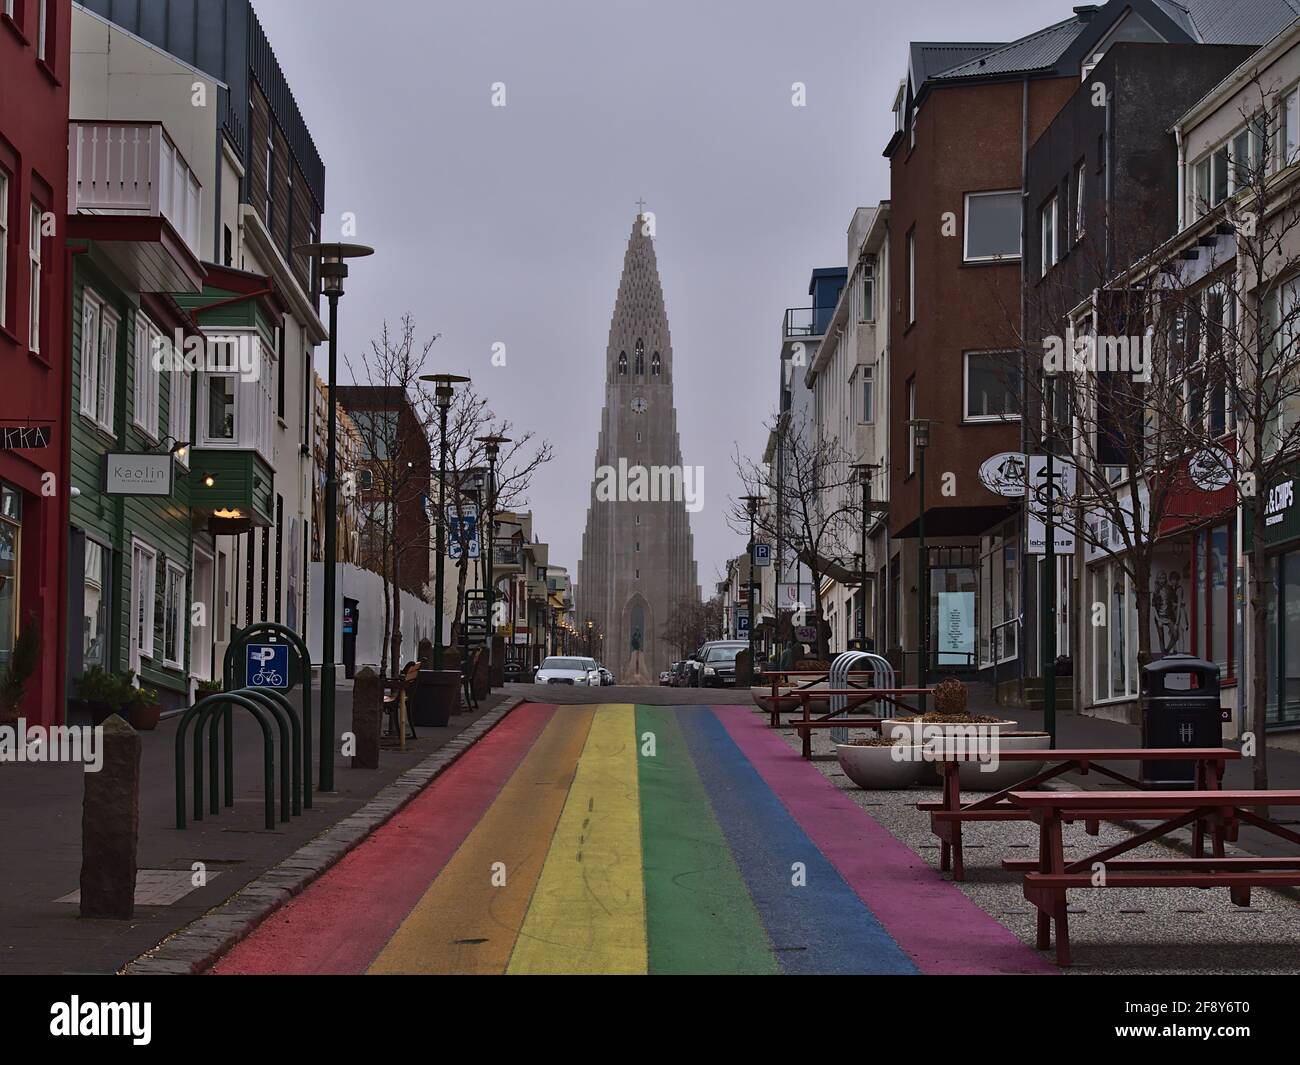 Vue sur la rue vide de l'arc-en-ciel dans le centre-ville de Reykjavik, dédiée au festival annuel Reykjavik Pride gay, avec l'église Hallgrímskirkja par temps nuageux. Banque D'Images